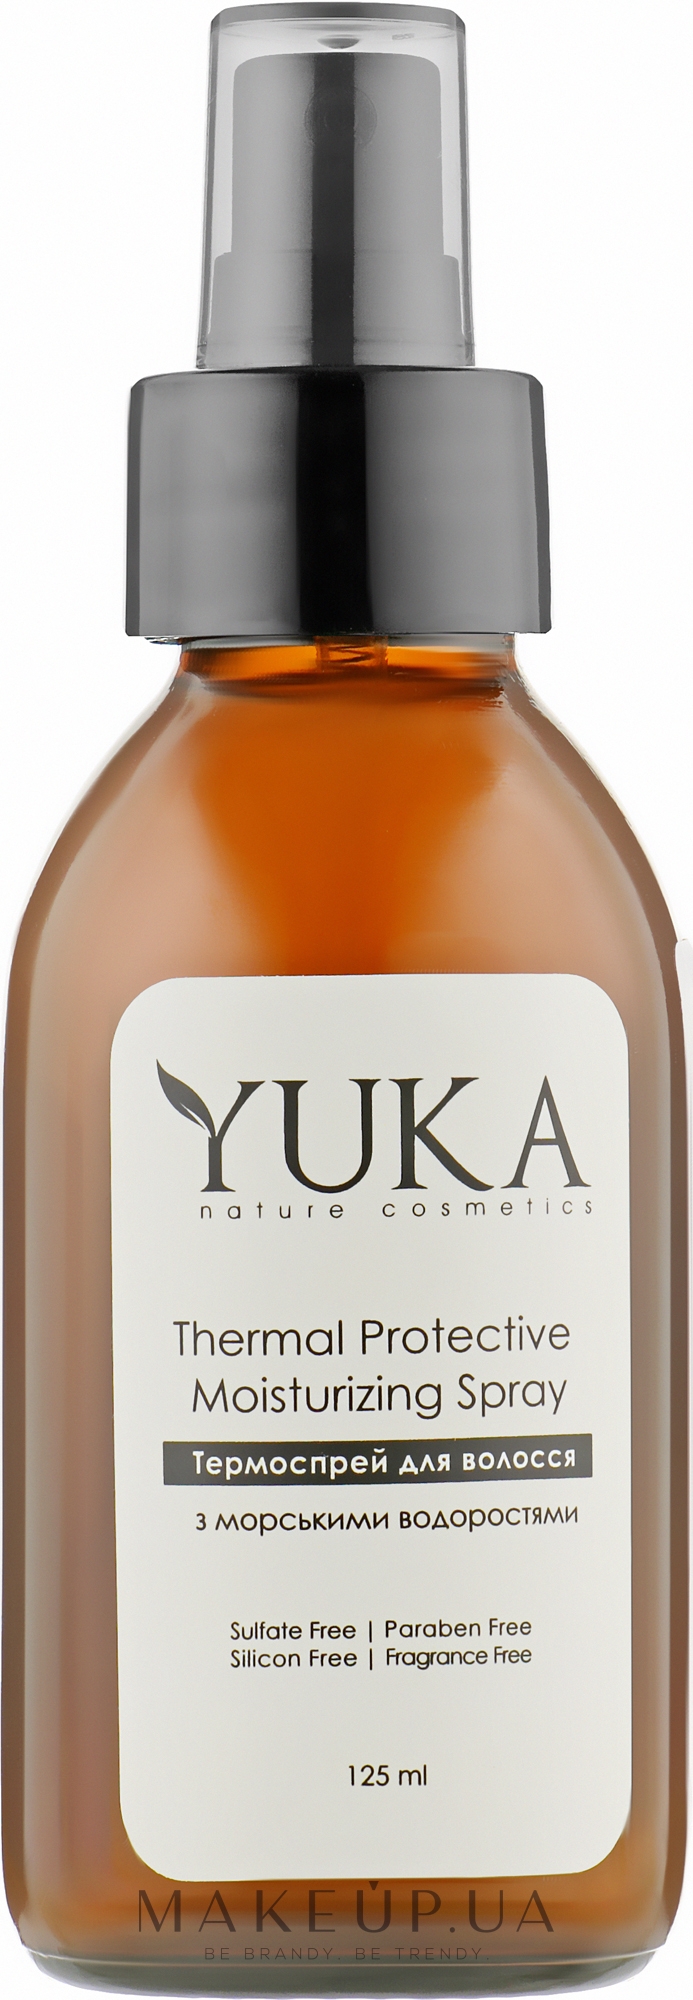 Термоспрей для зволоження, відновлення й захисту волосся - Yuka Thermal Protective Moisturizing Spray — фото 125ml